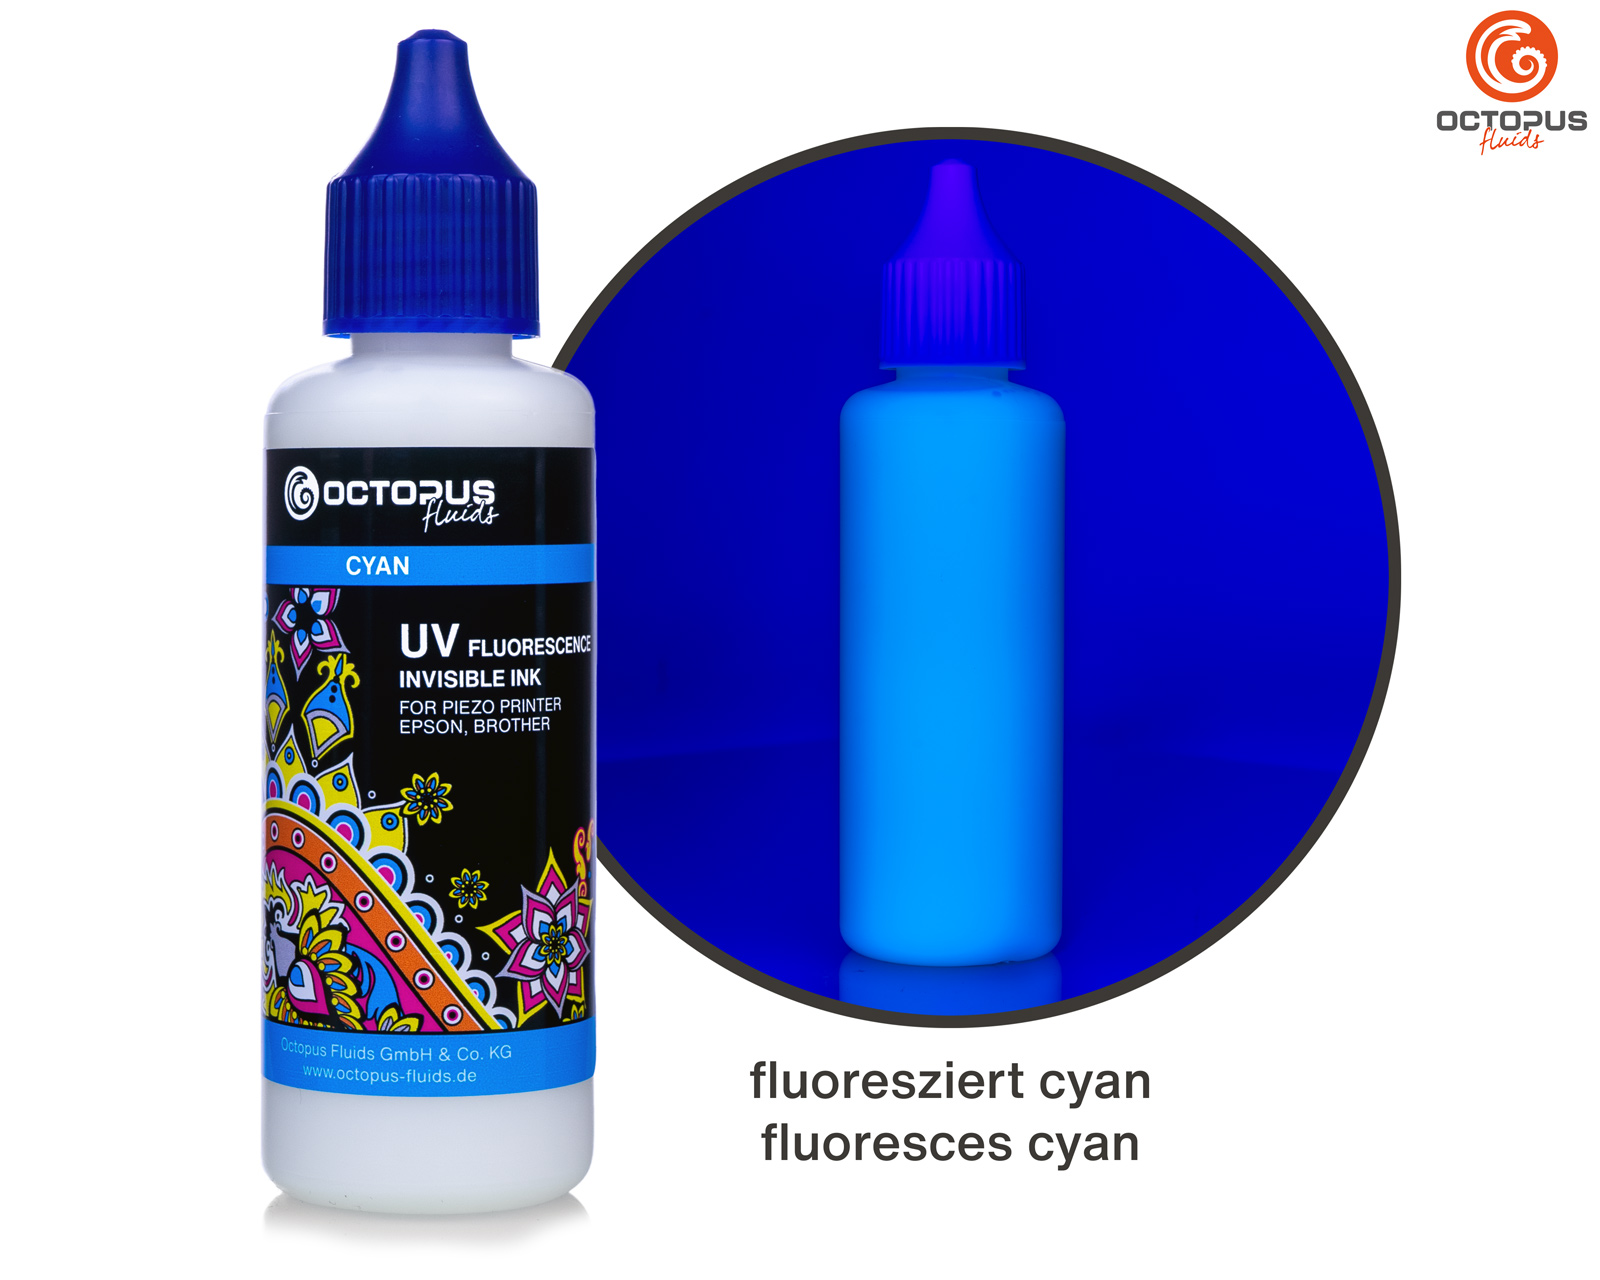 UV fluoreszierende, unsichtbare Tinte für Piezo Drucker Epson und Brother, cyan